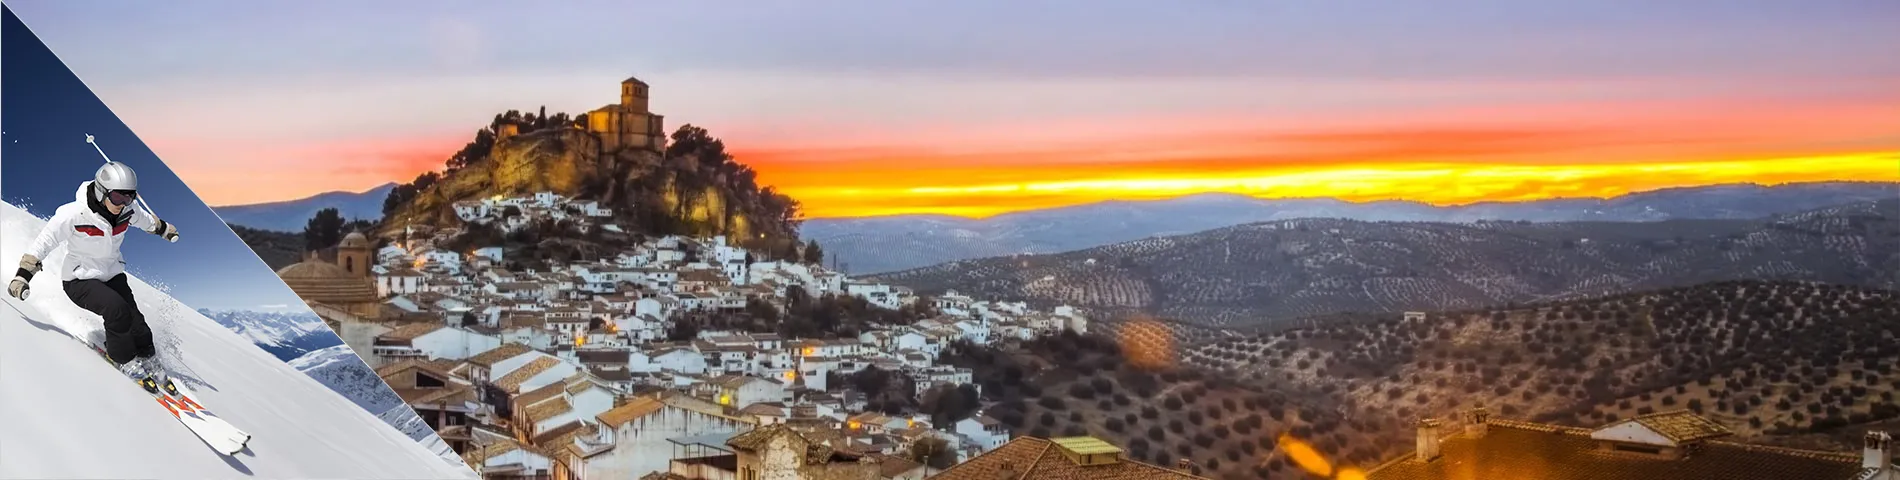 Granada - Spanish & Skiing